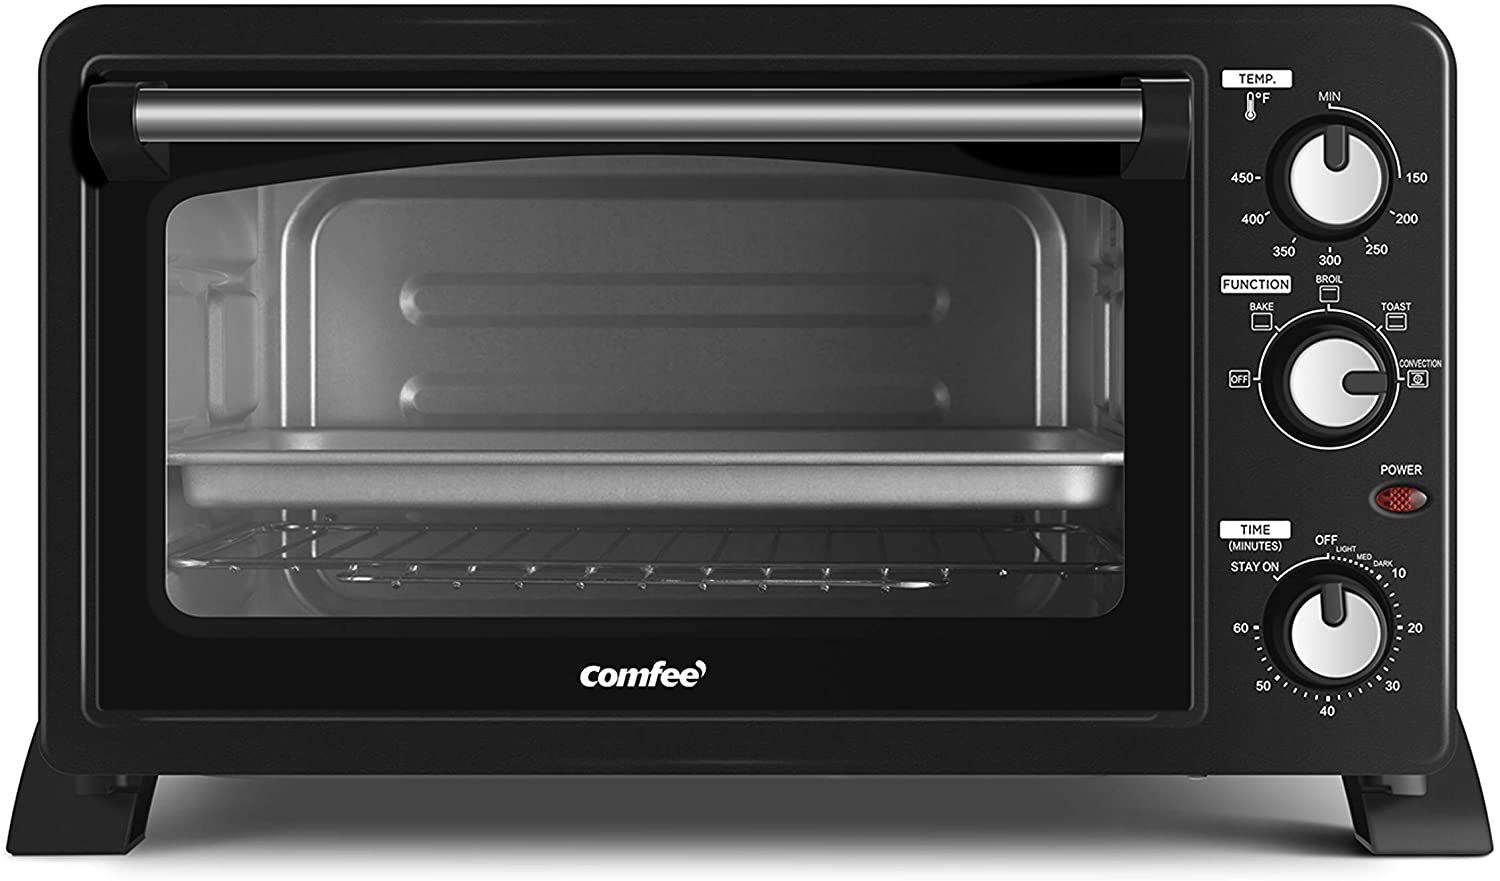 COMFEE’ CC2501 Countertop Toaster Convection Oven